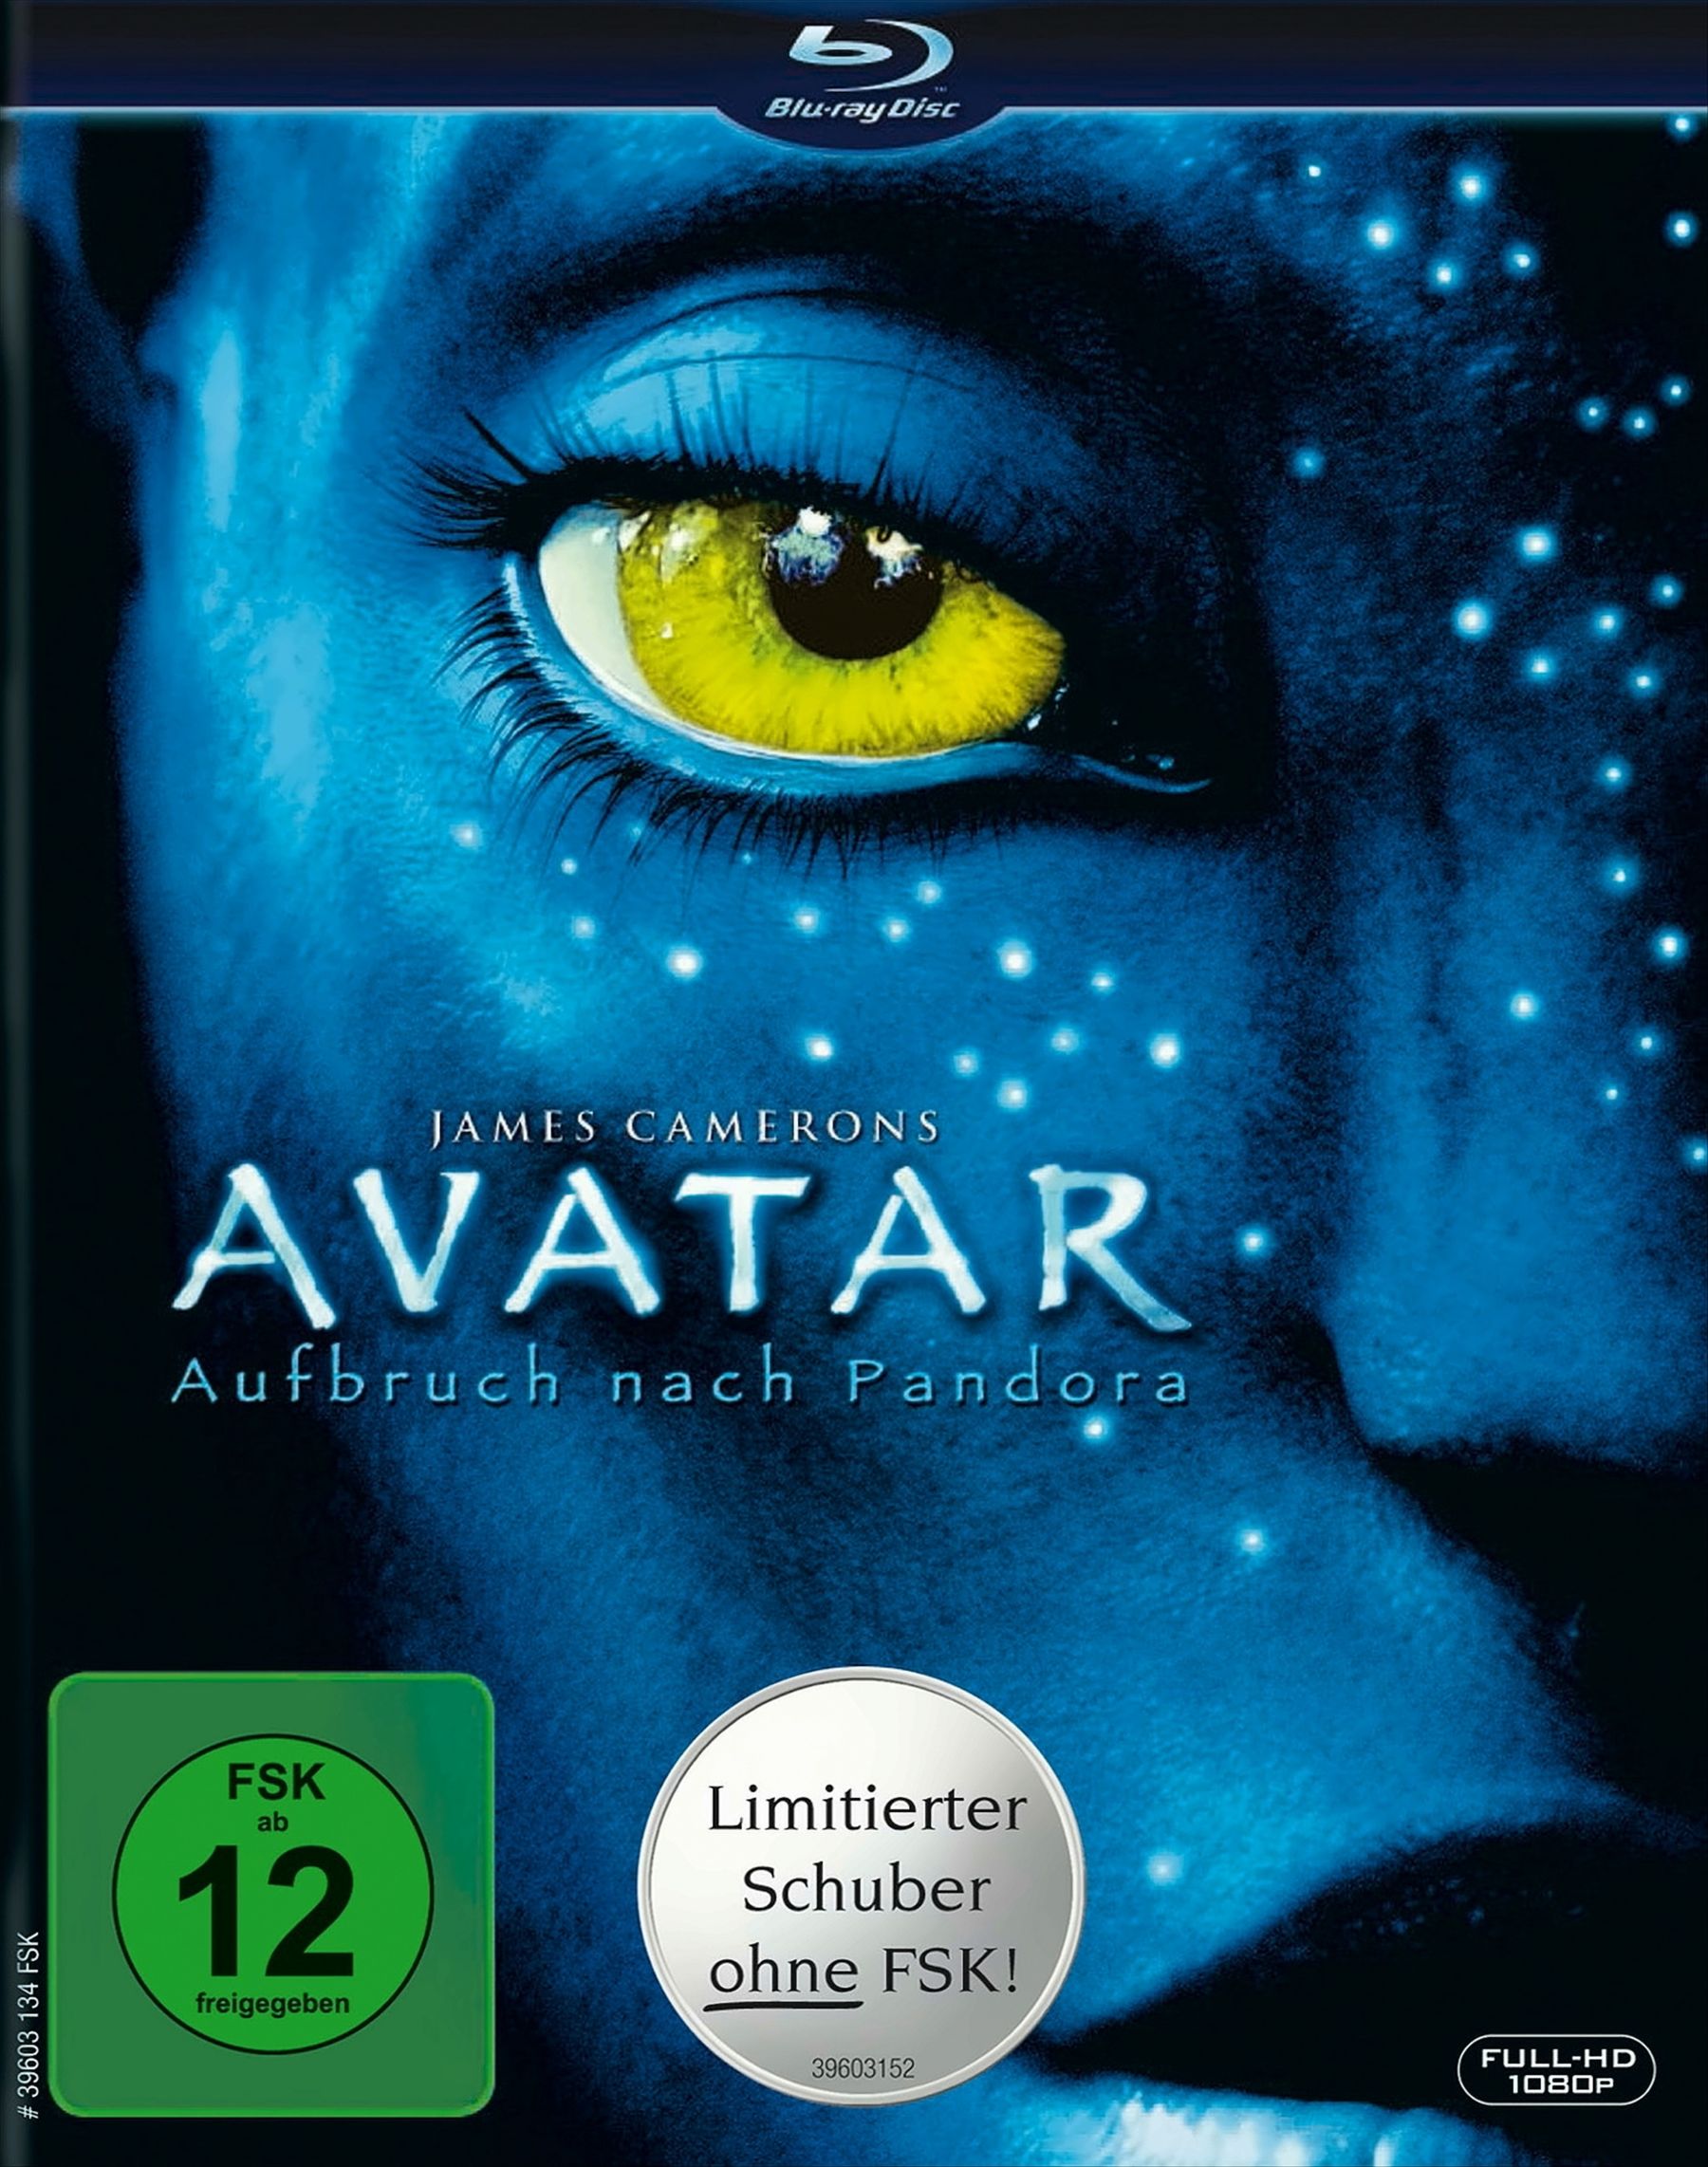 Avatar - Aufbruch nach Pandora (Limitierte Auflage)